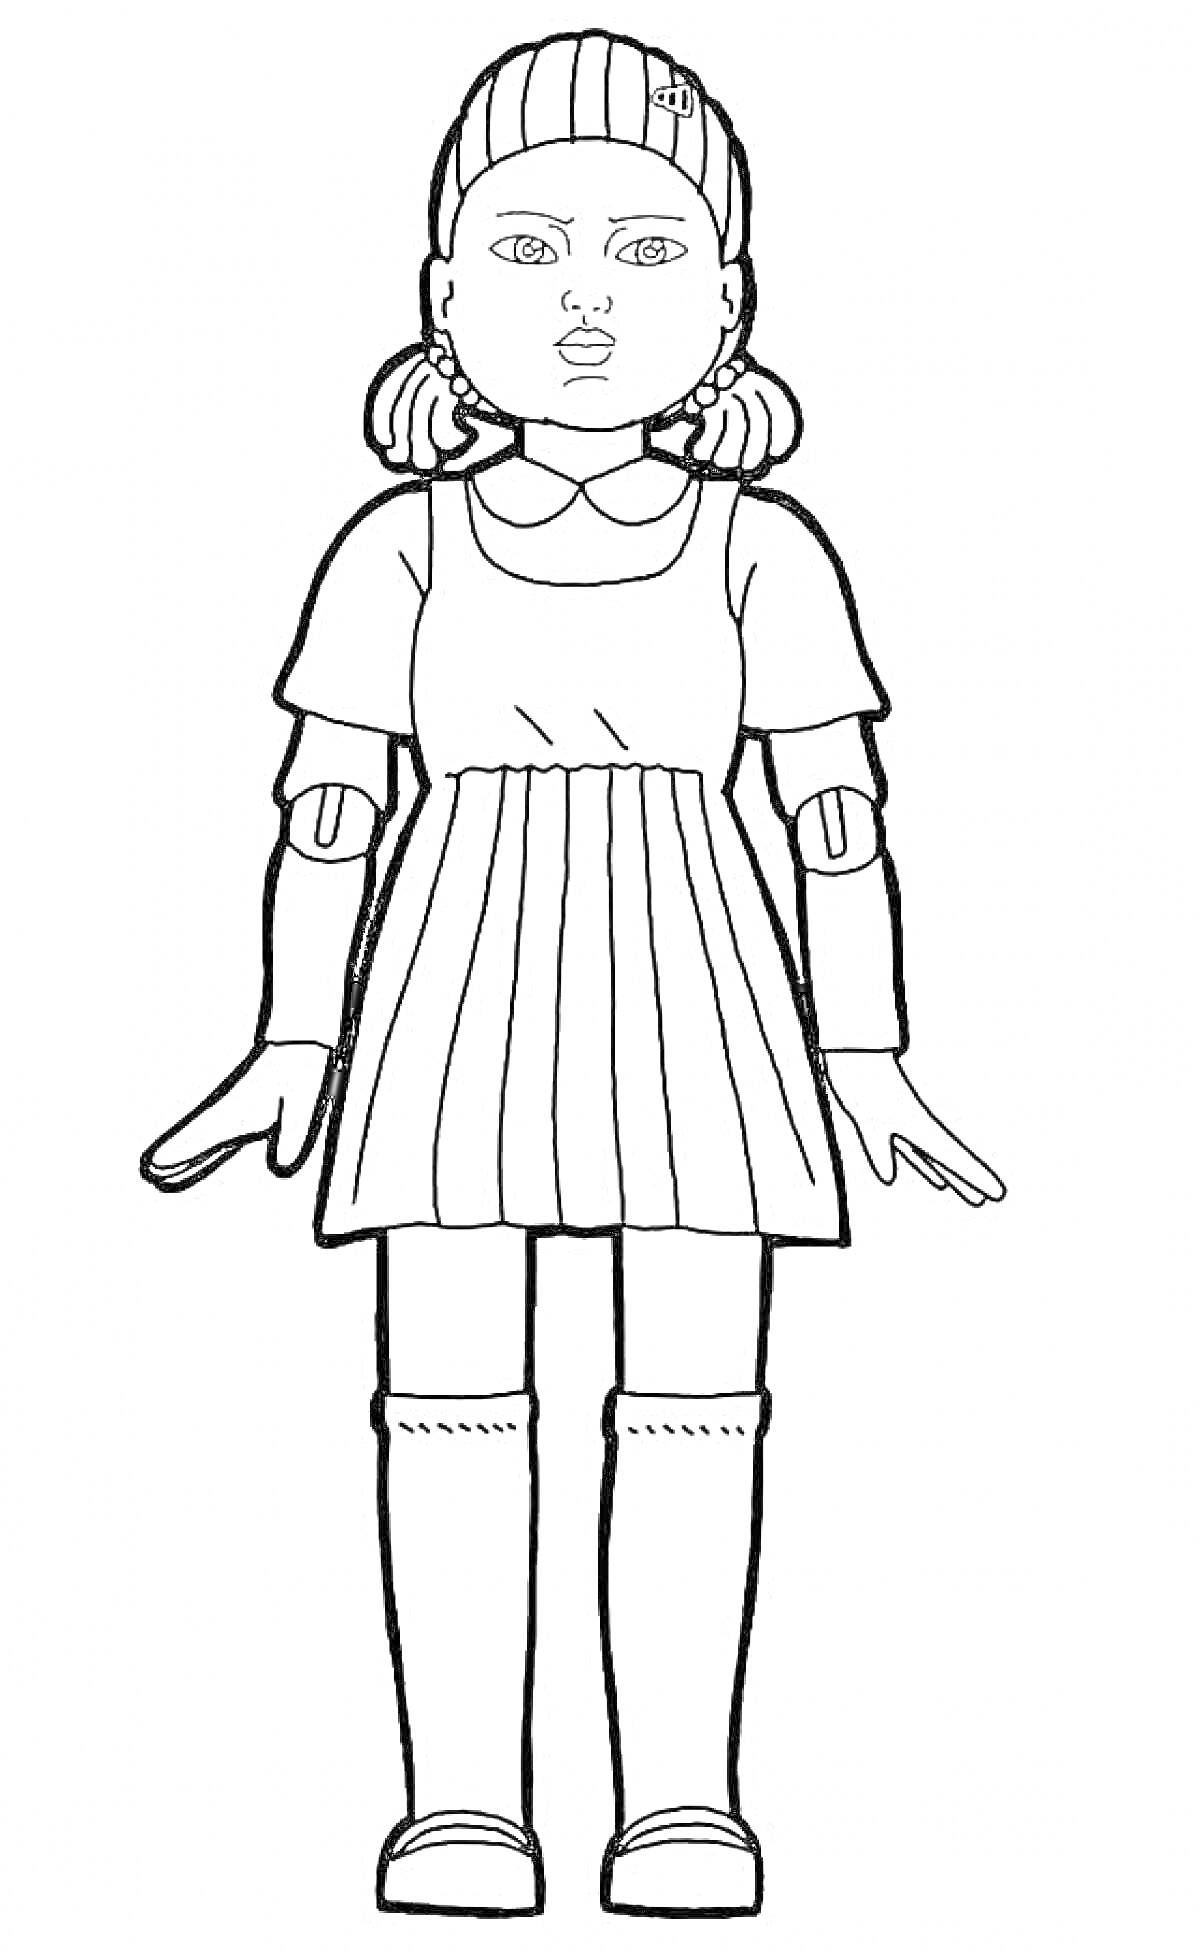 Раскраска Девочка с длинными ногами в платье, с хвостиками на голове и заколкой